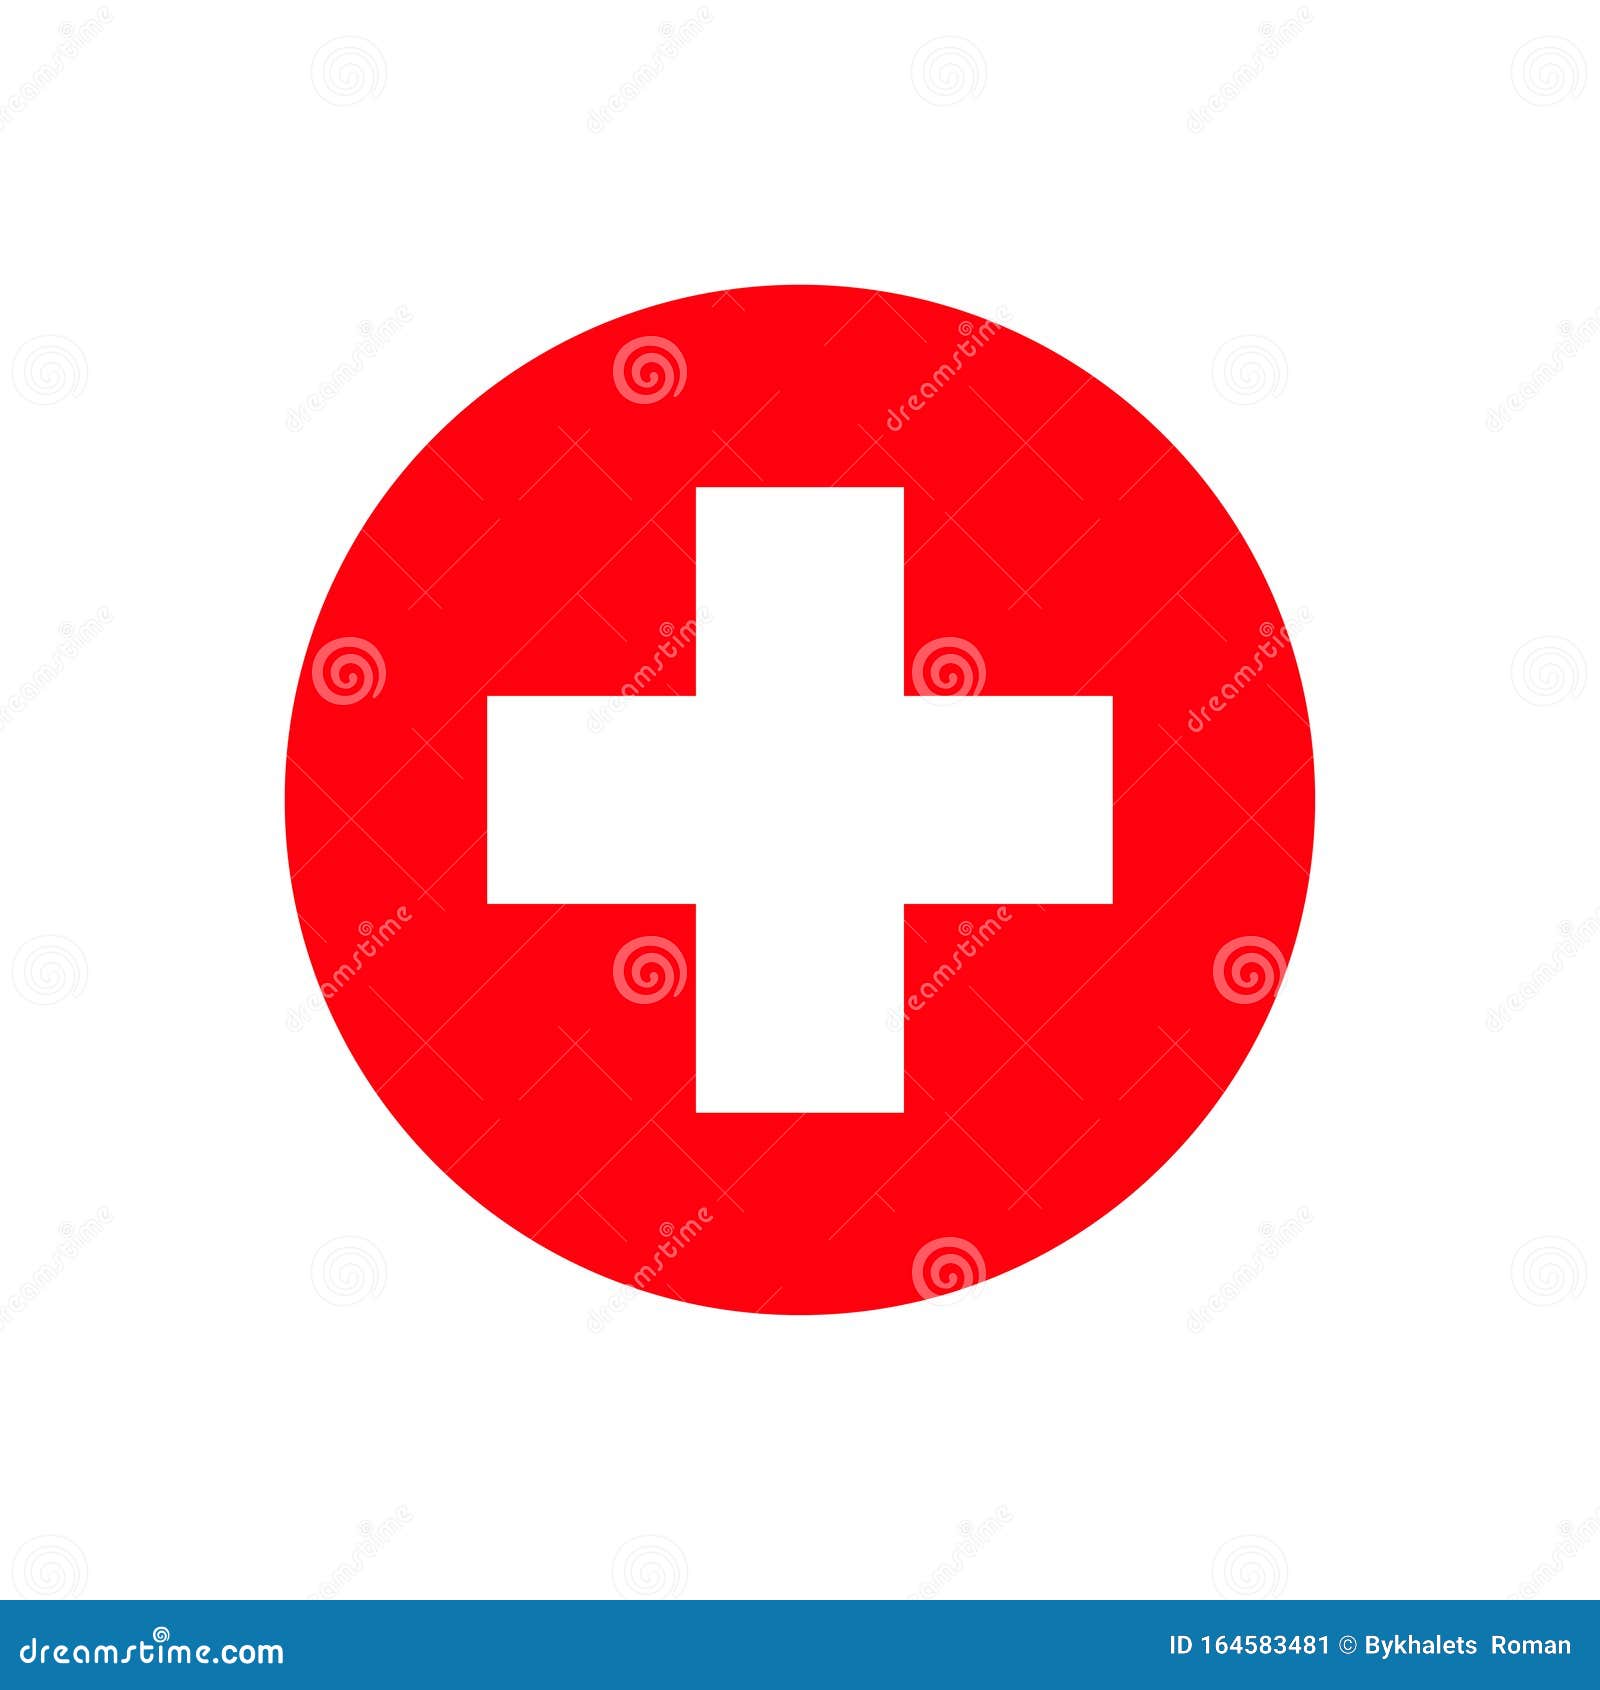 Bệnh viện chữ thập đỏ: Bệnh viện chữ thập đỏ - một trong những bệnh viện uy tín trong lĩnh vực y tế và sự cứu trợ. Ảnh sẽ cho bạn cái nhìn tổng quan về bệnh viện, đội ngũ y bác sĩ và những bệnh nhân được điều trị, hỗ trợ tại đây. Hãy xem để có thể cảm nhận được niềm tin và chữ tín của chữ thập đỏ.